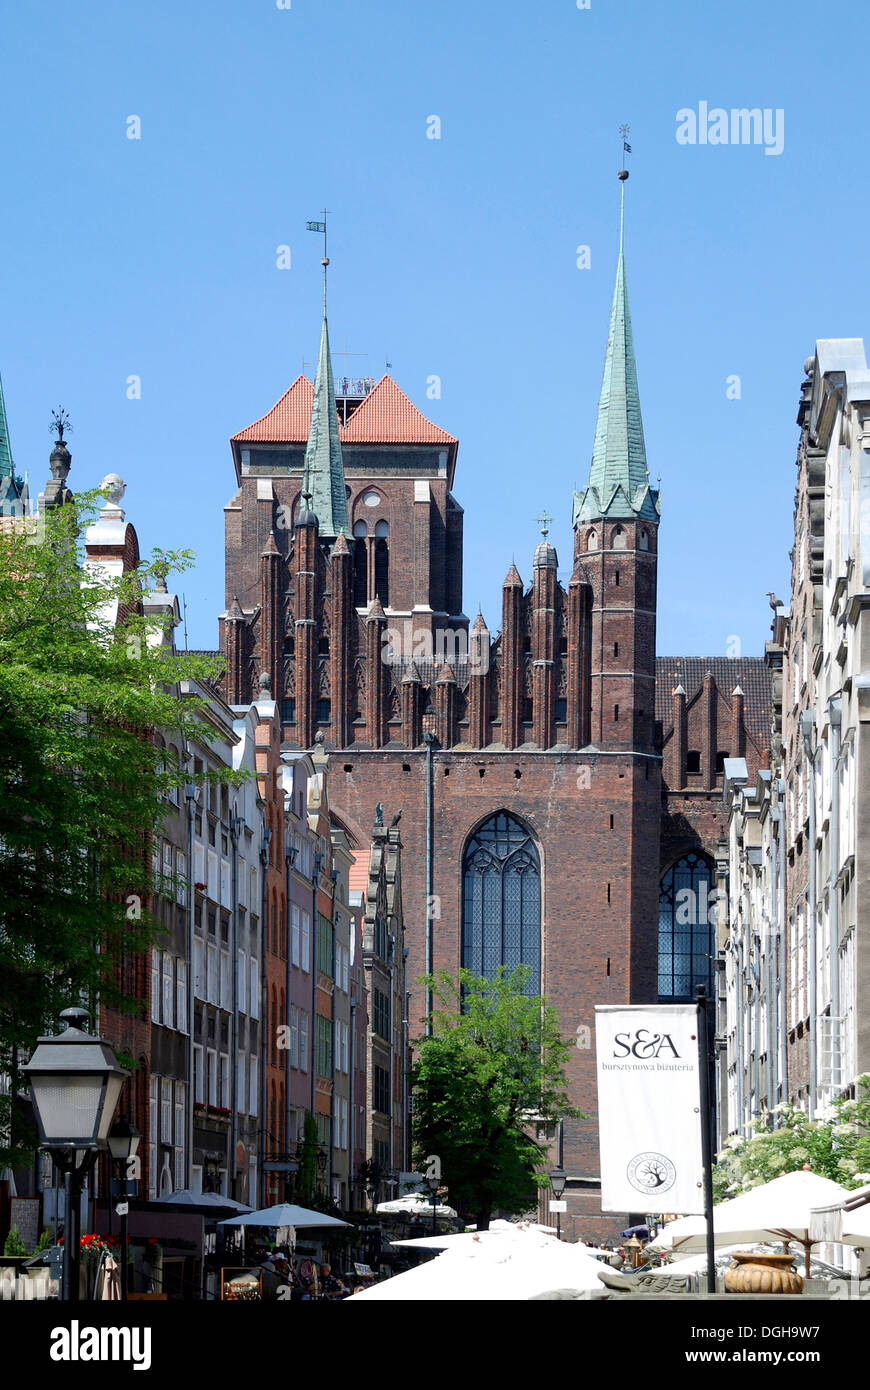 Mary's Street avec vue sur l'église Sainte-Marie de Gdansk - Kosciol Mariacki. Banque D'Images